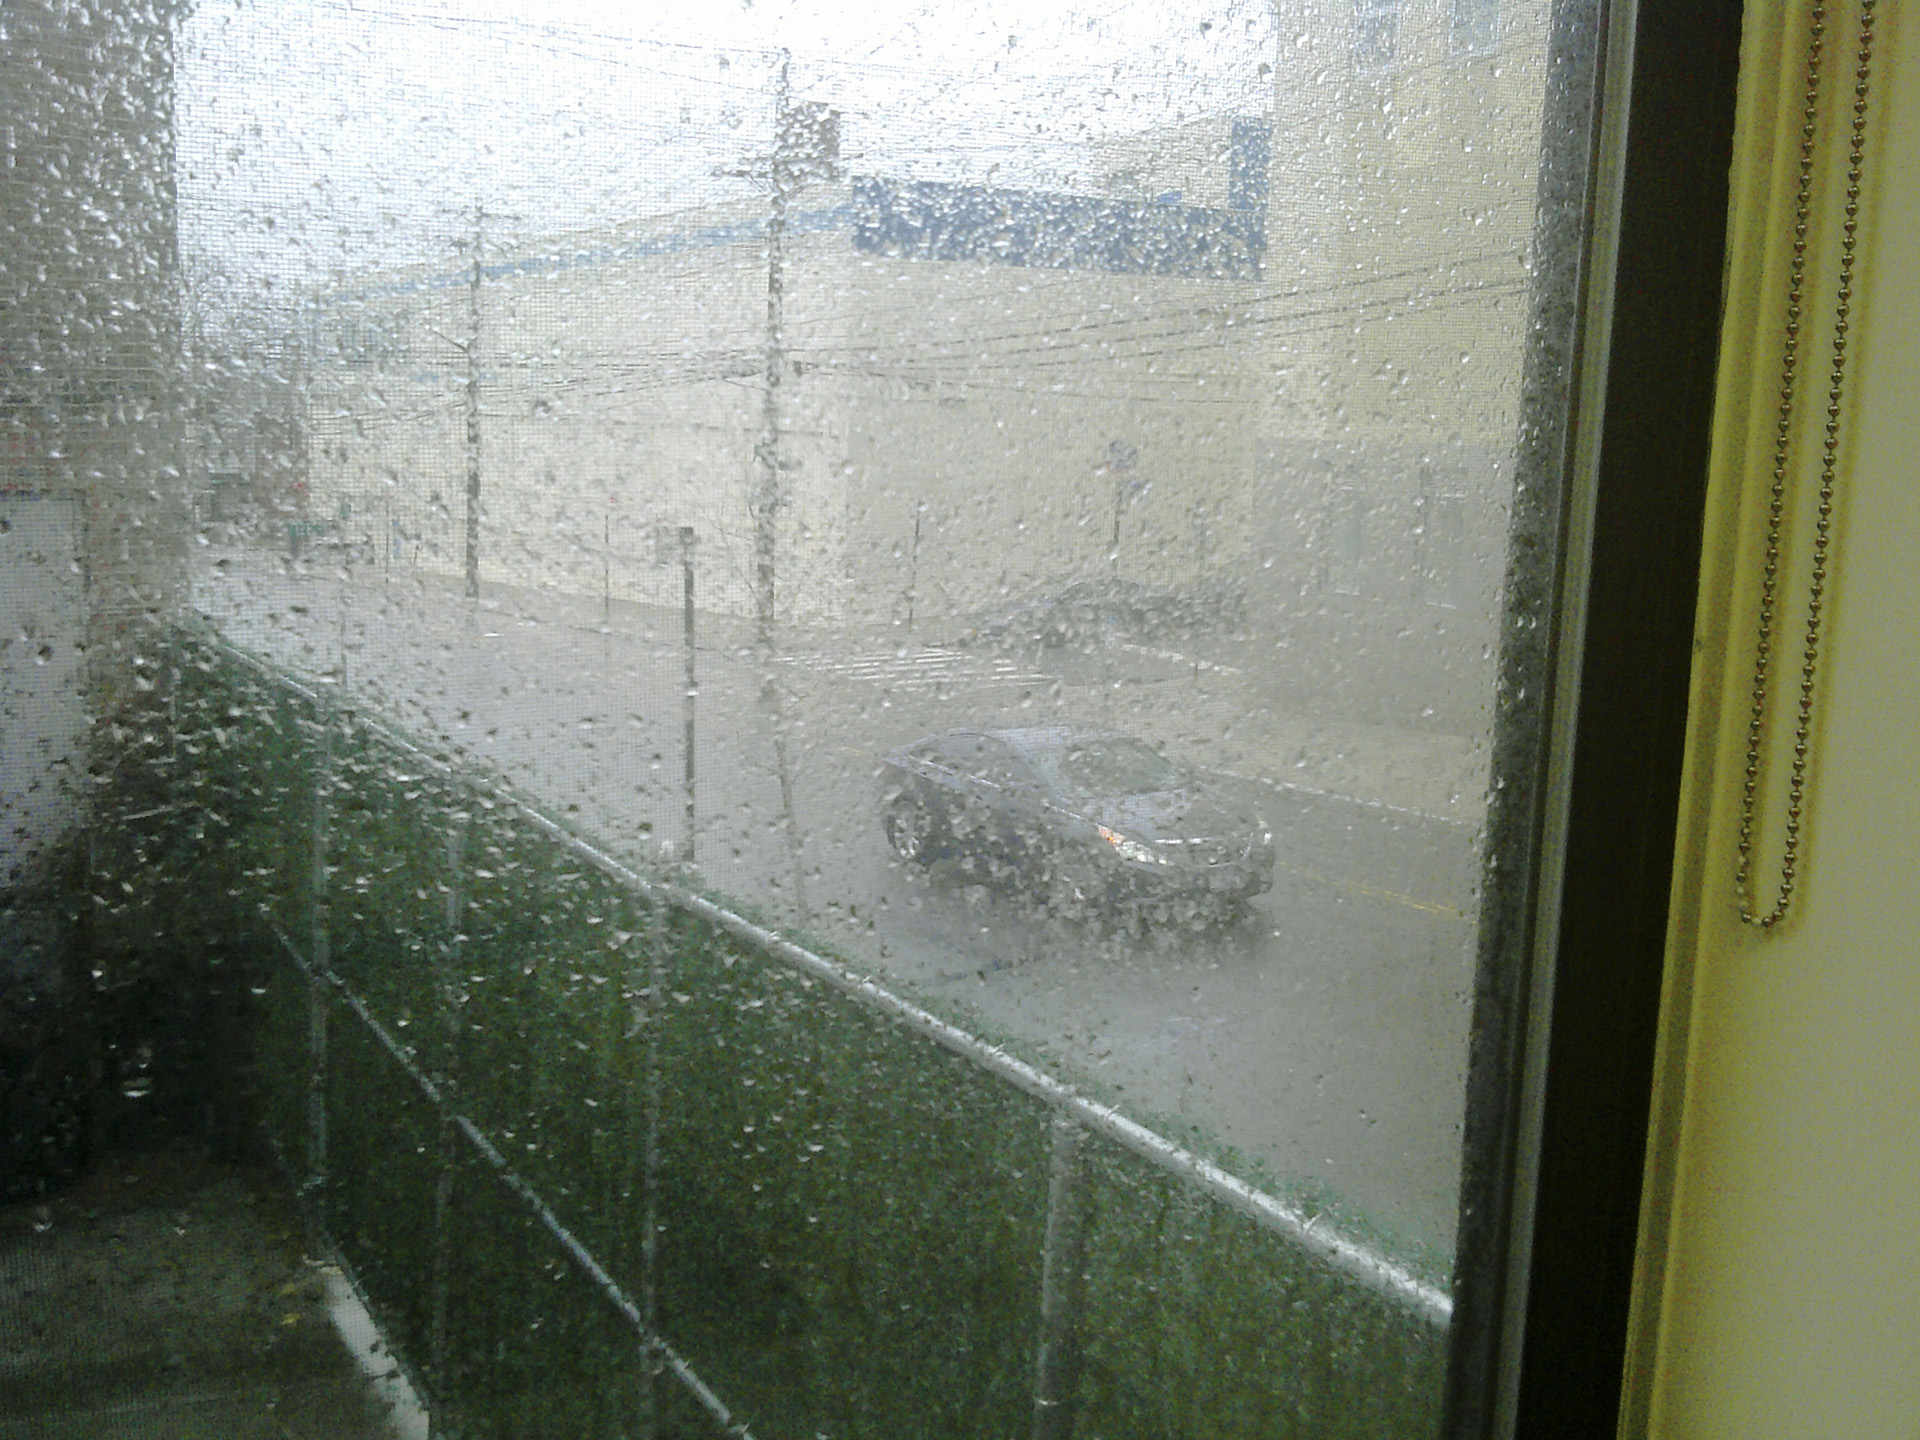 shot of exterior scene in rain featuring car